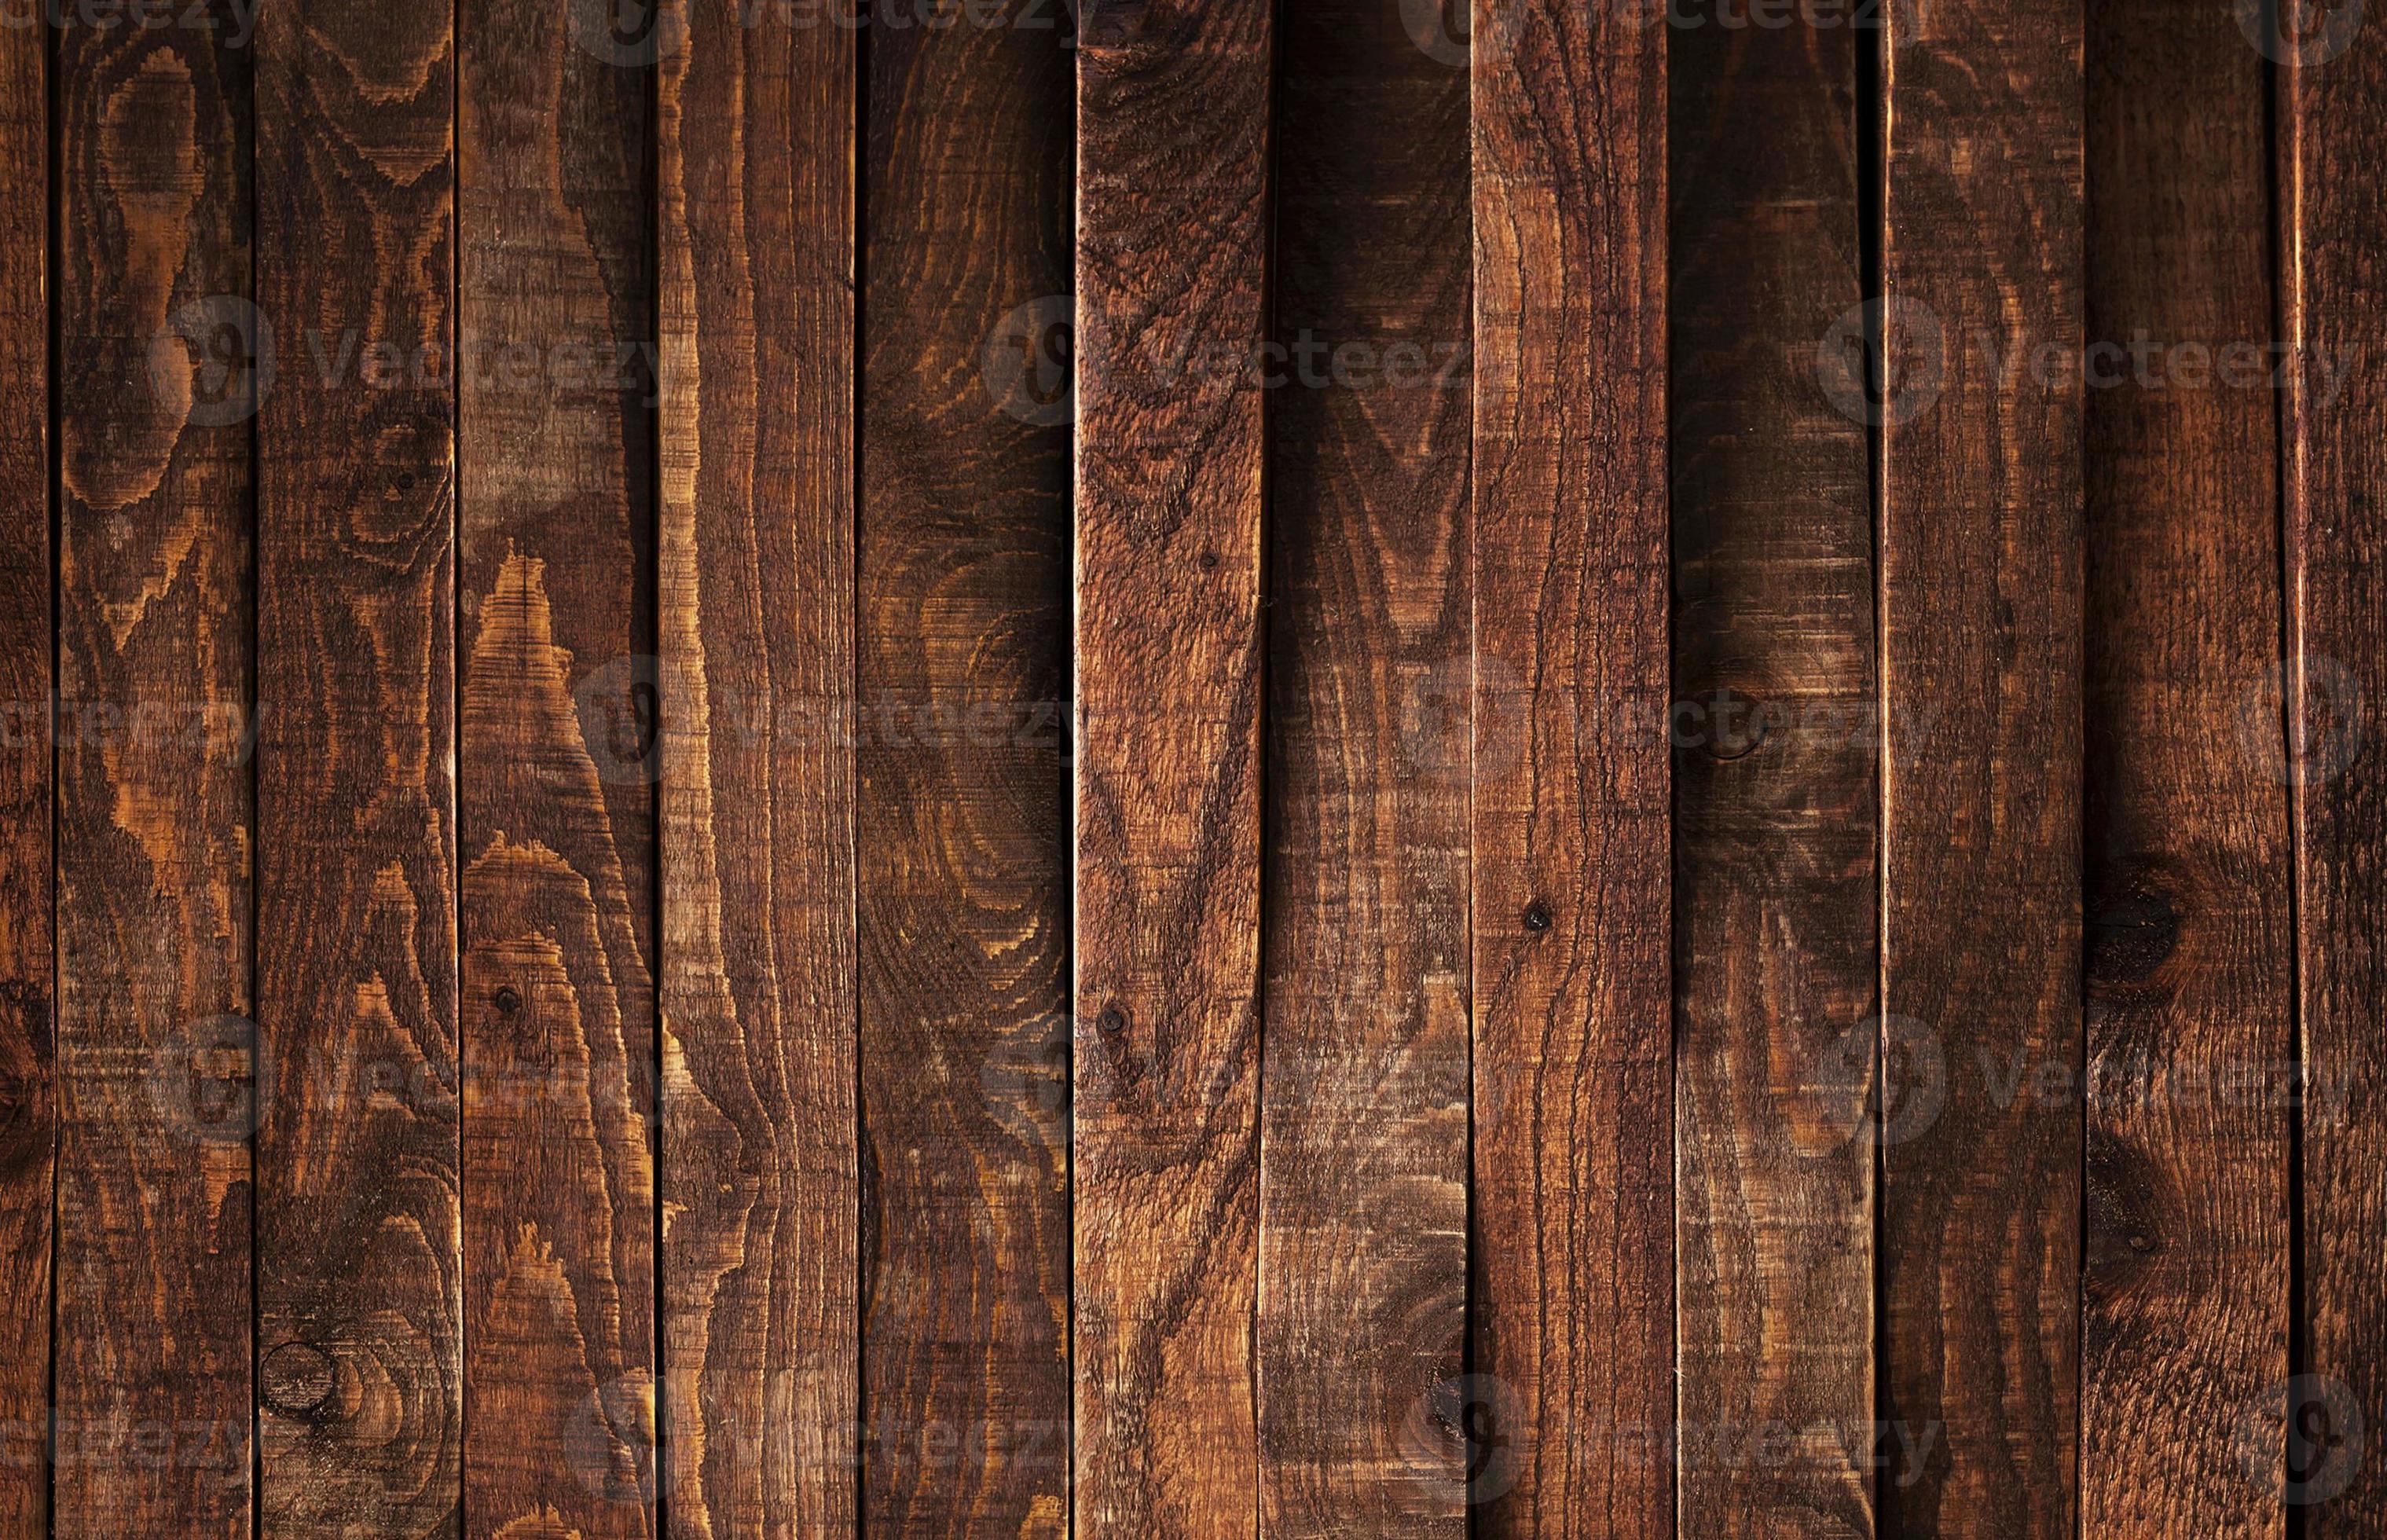 Bạn yêu thích sự cổ điển và truyền thống? Hình nền gỗ với vân gỗ nâu cổ điển sẽ mang lại cho bạn cảm giác trang trọng và ấm áp. Hãy ngắm nhìn hình ảnh đẹp này để tìm cảm hứng cho phòng khách của bạn.